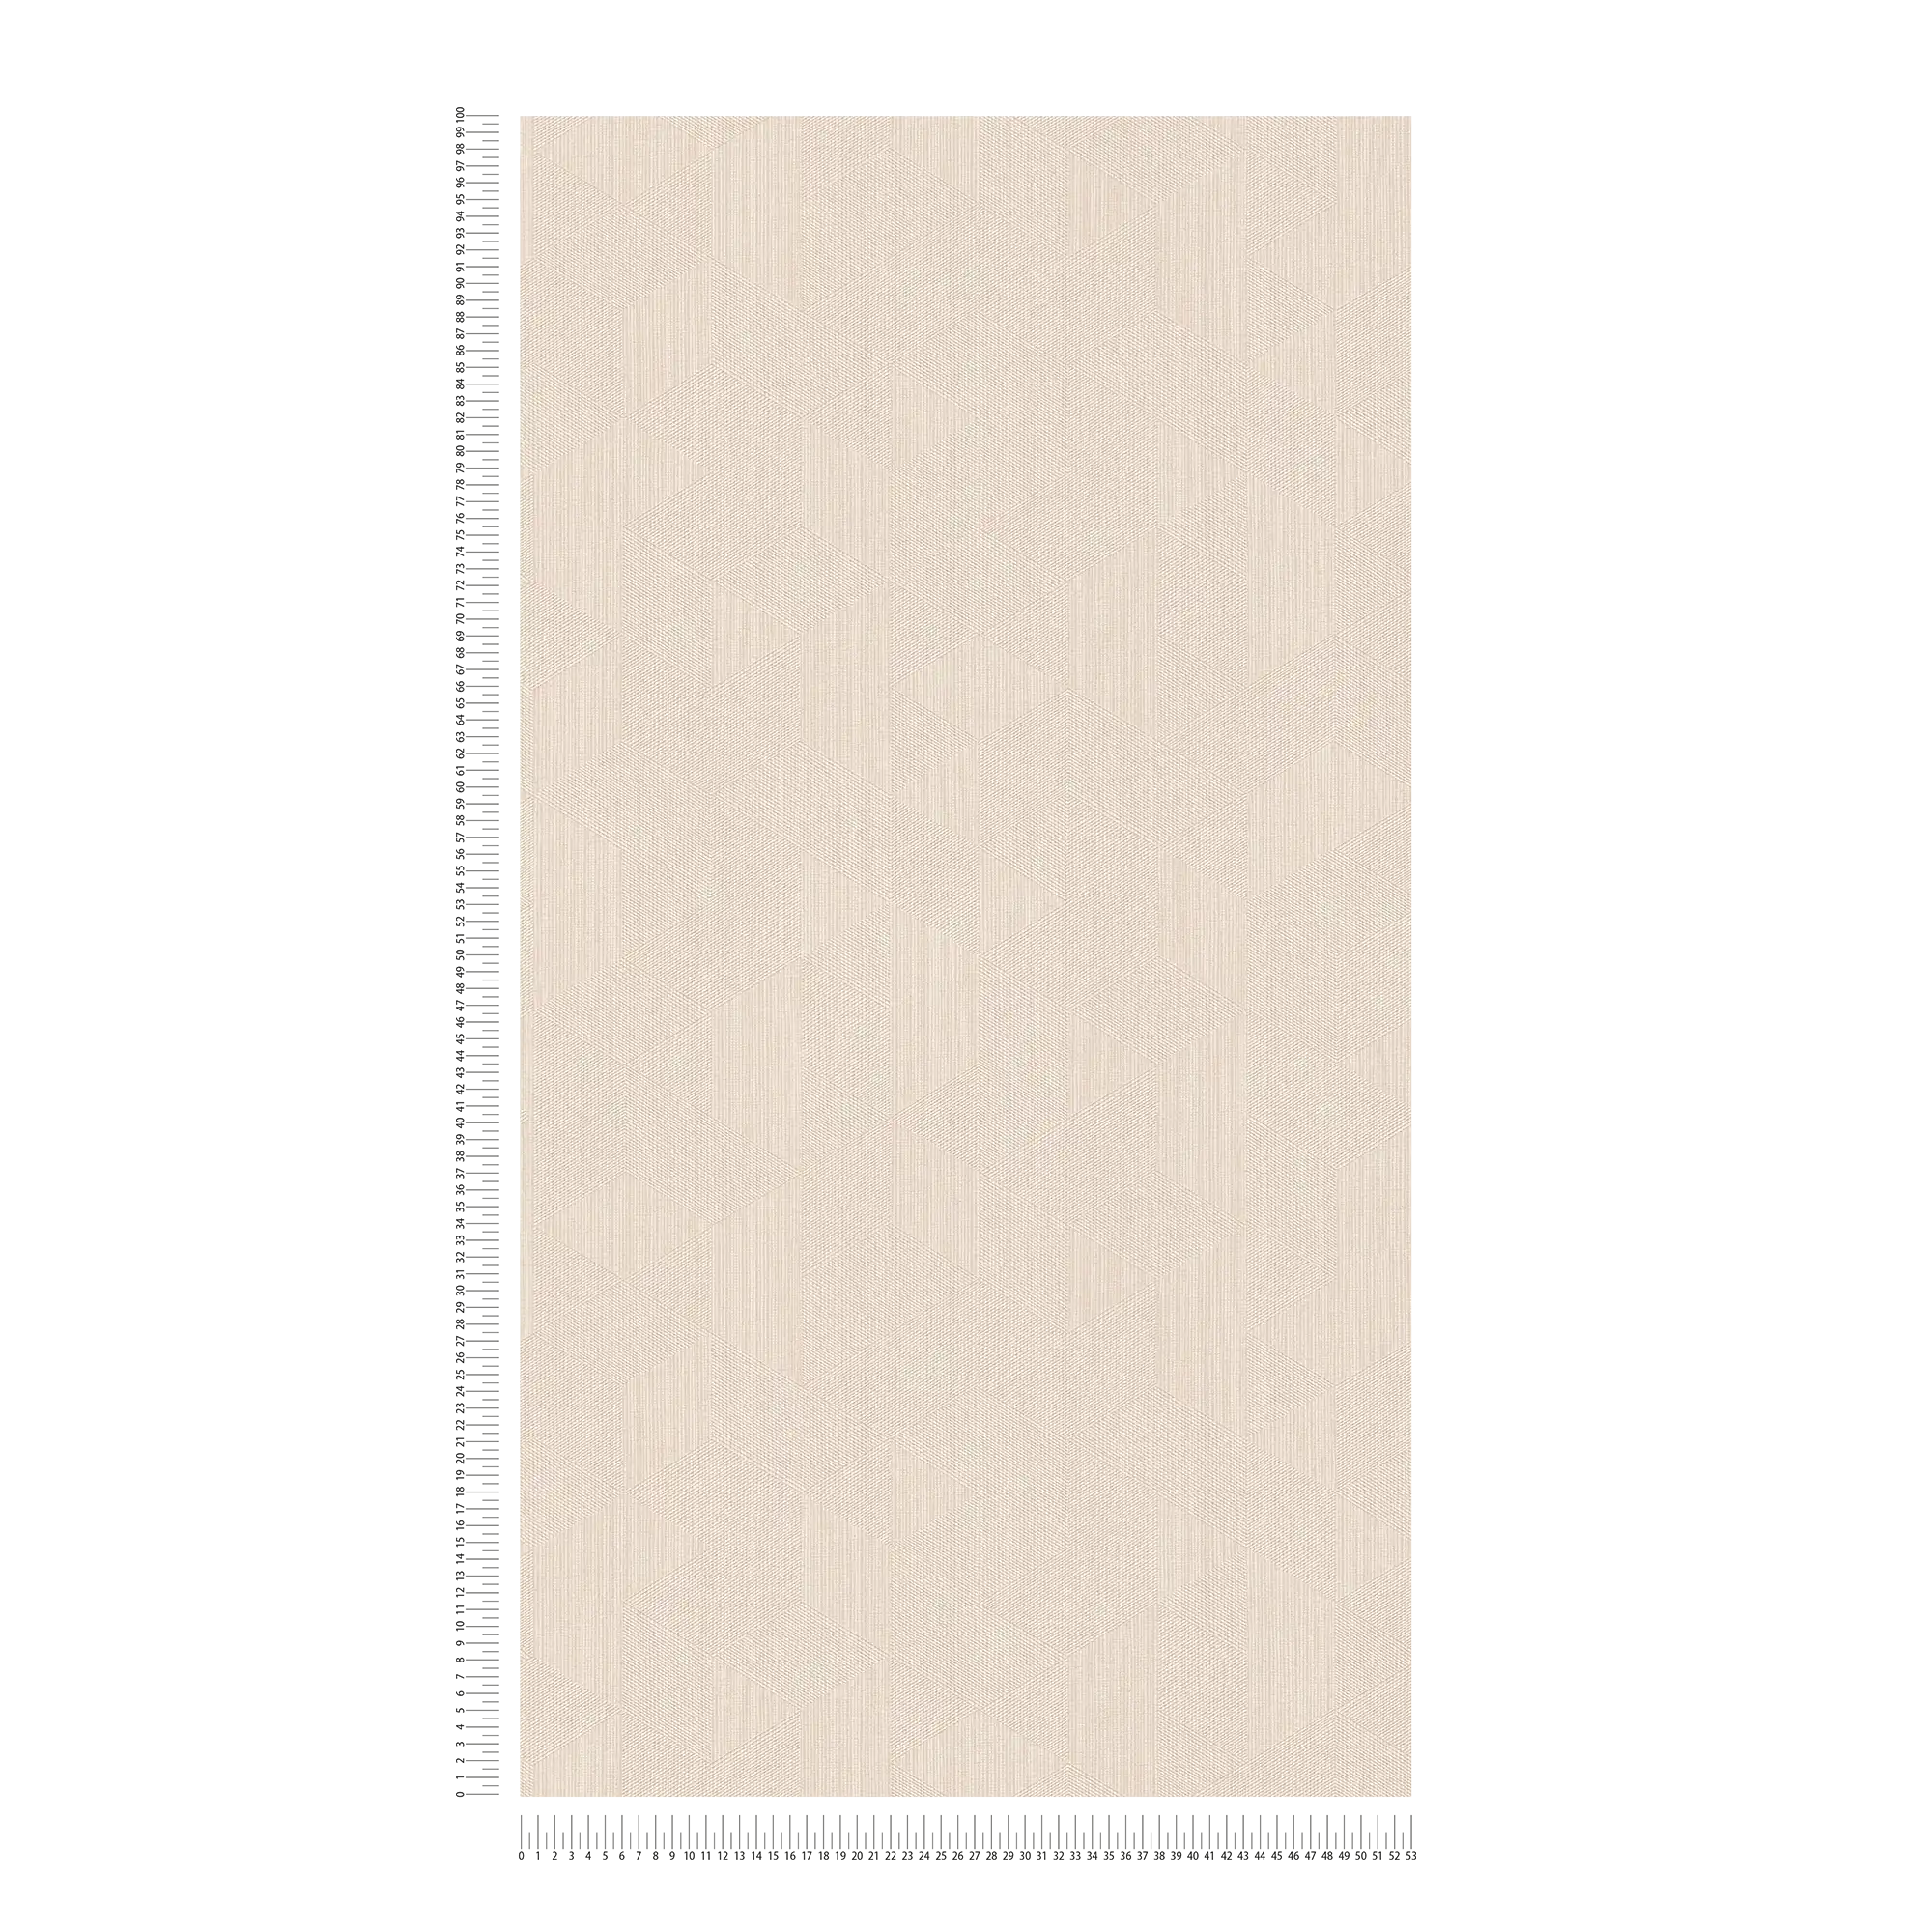             Carta da parati beige chiaro in tessuto non tessuto con motivo grafico ed effetto shimmer - beige
        